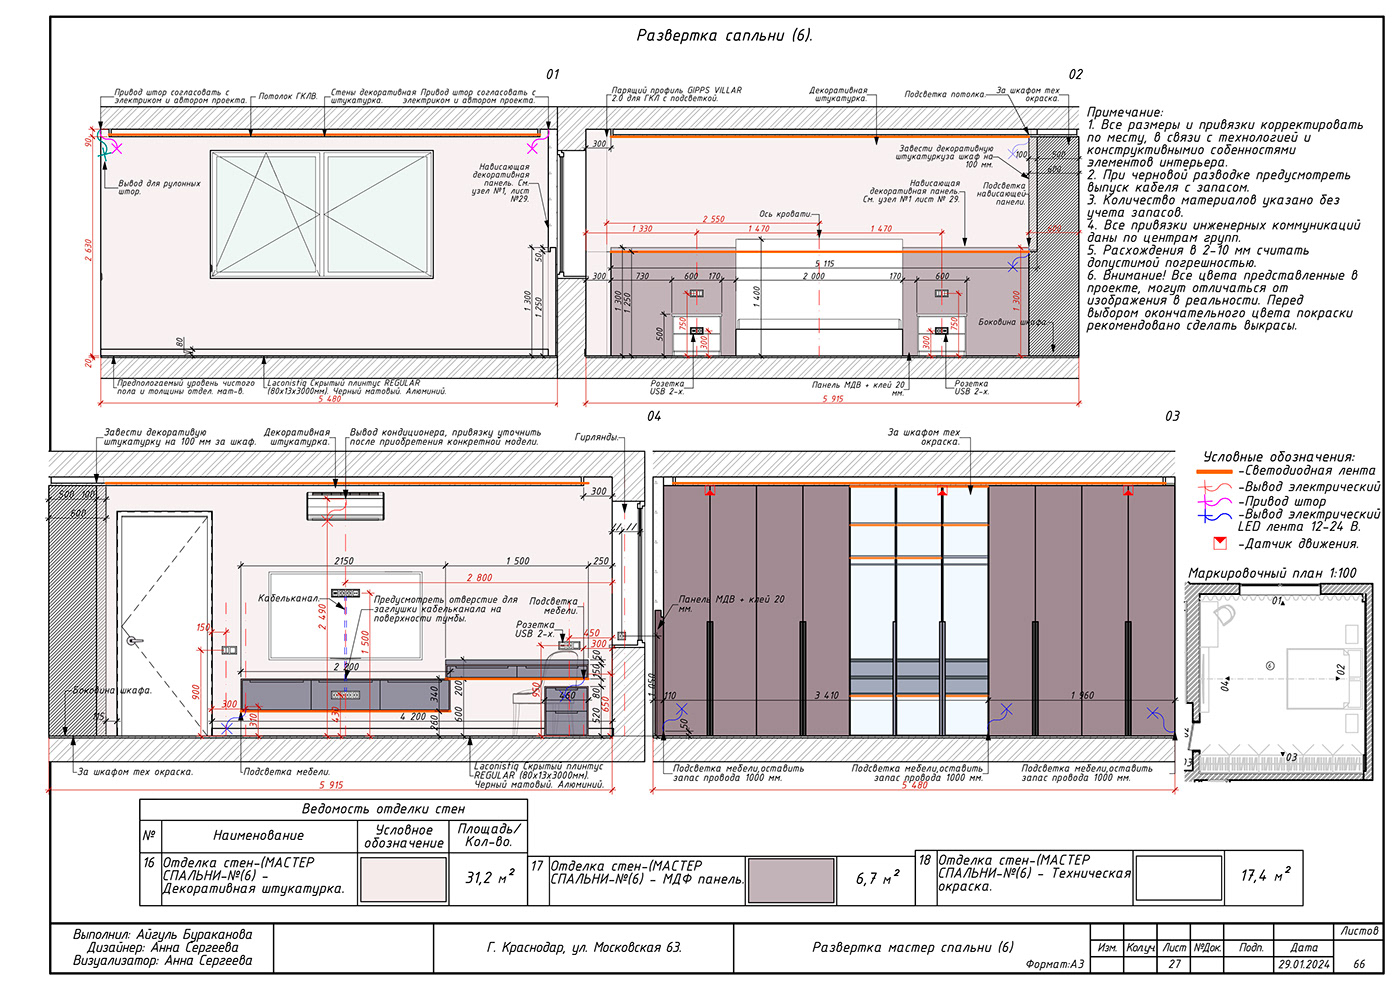 design blueprints дизайн интерьера ArchiCAD интерьер проектная документация рабочая документация рабочие чертежи ЧЕРТЕЖИ ИНТЕРЬЕРА чертежник